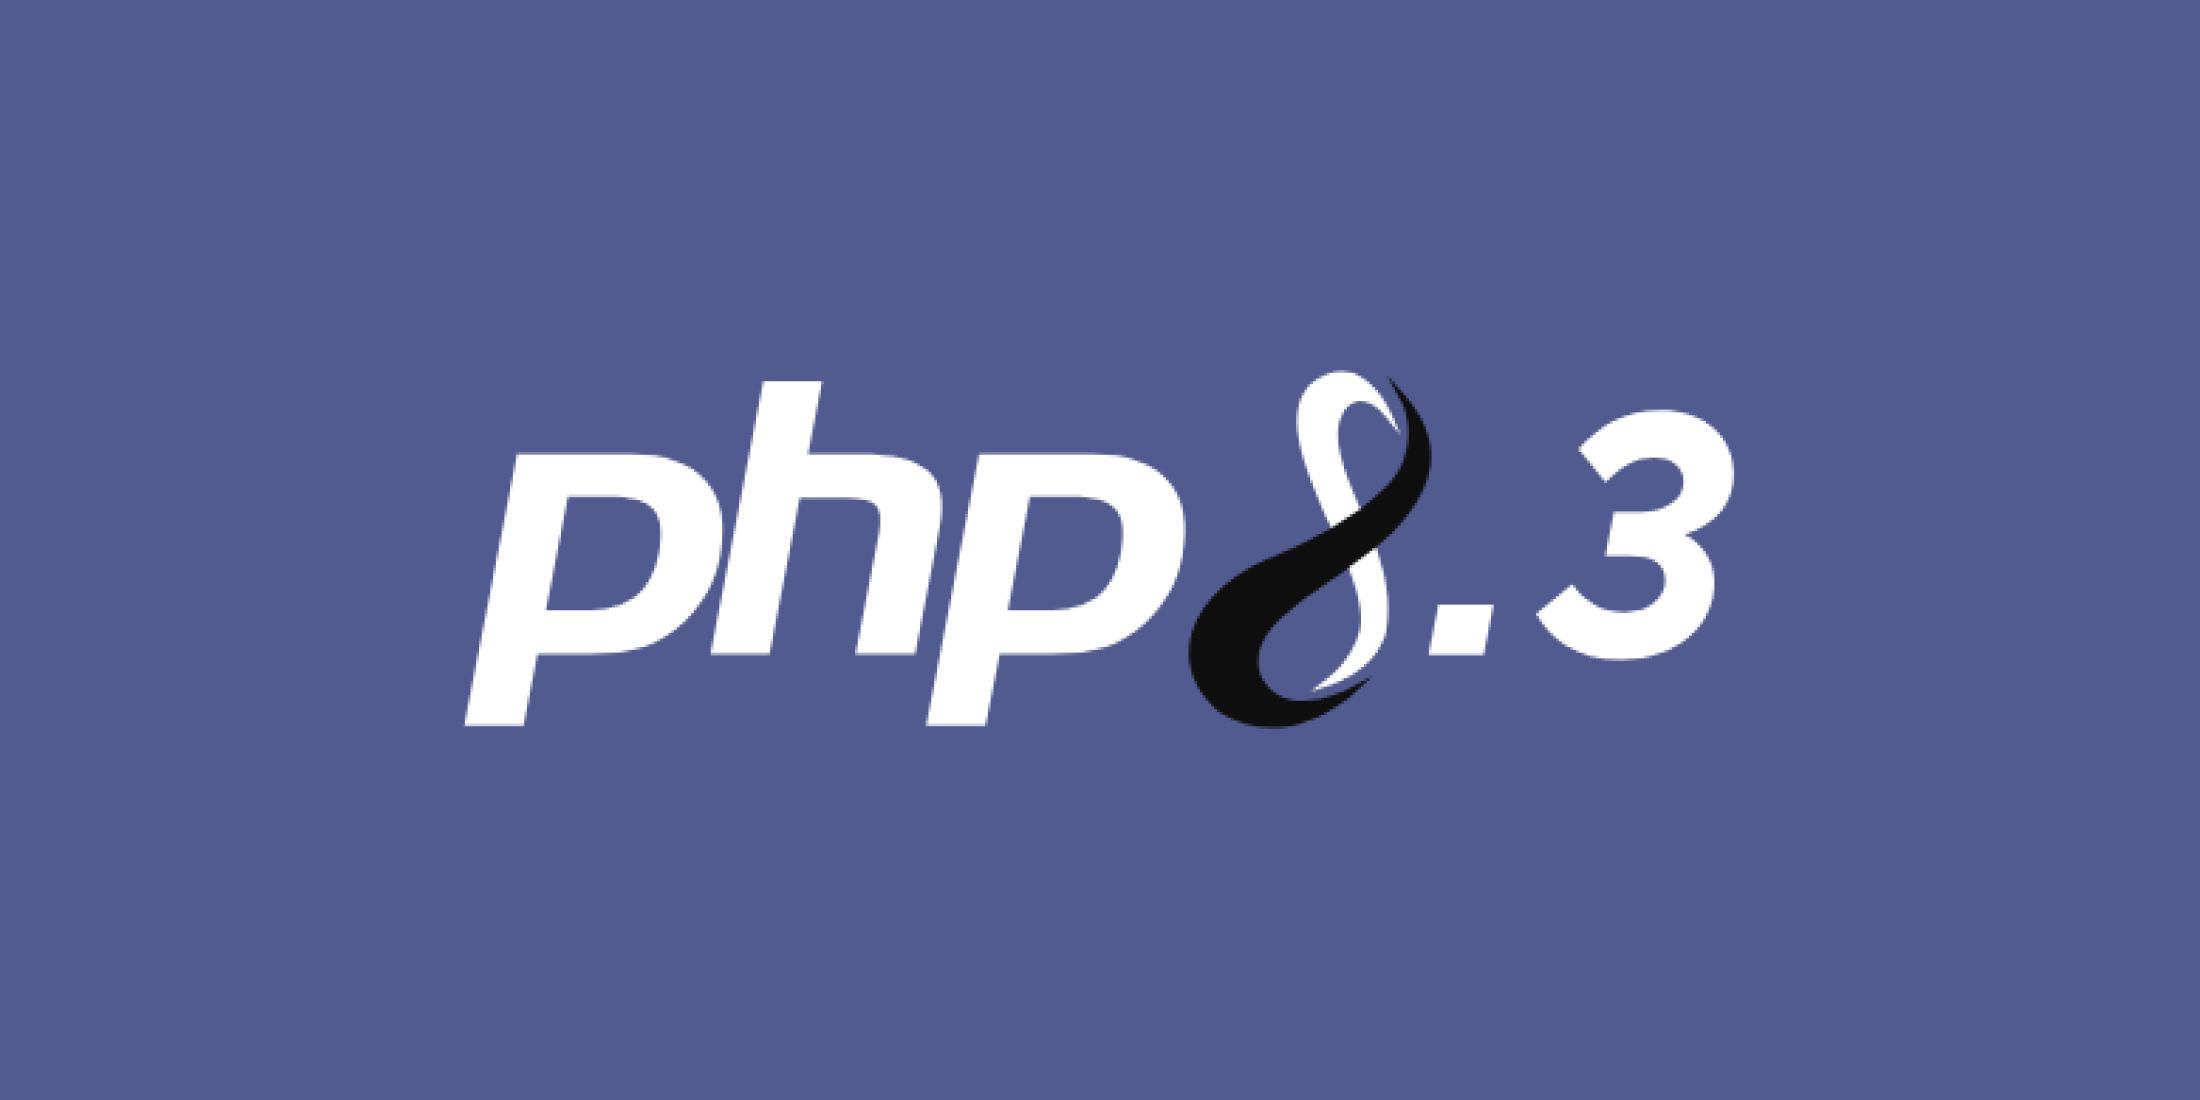 php8.3 logo